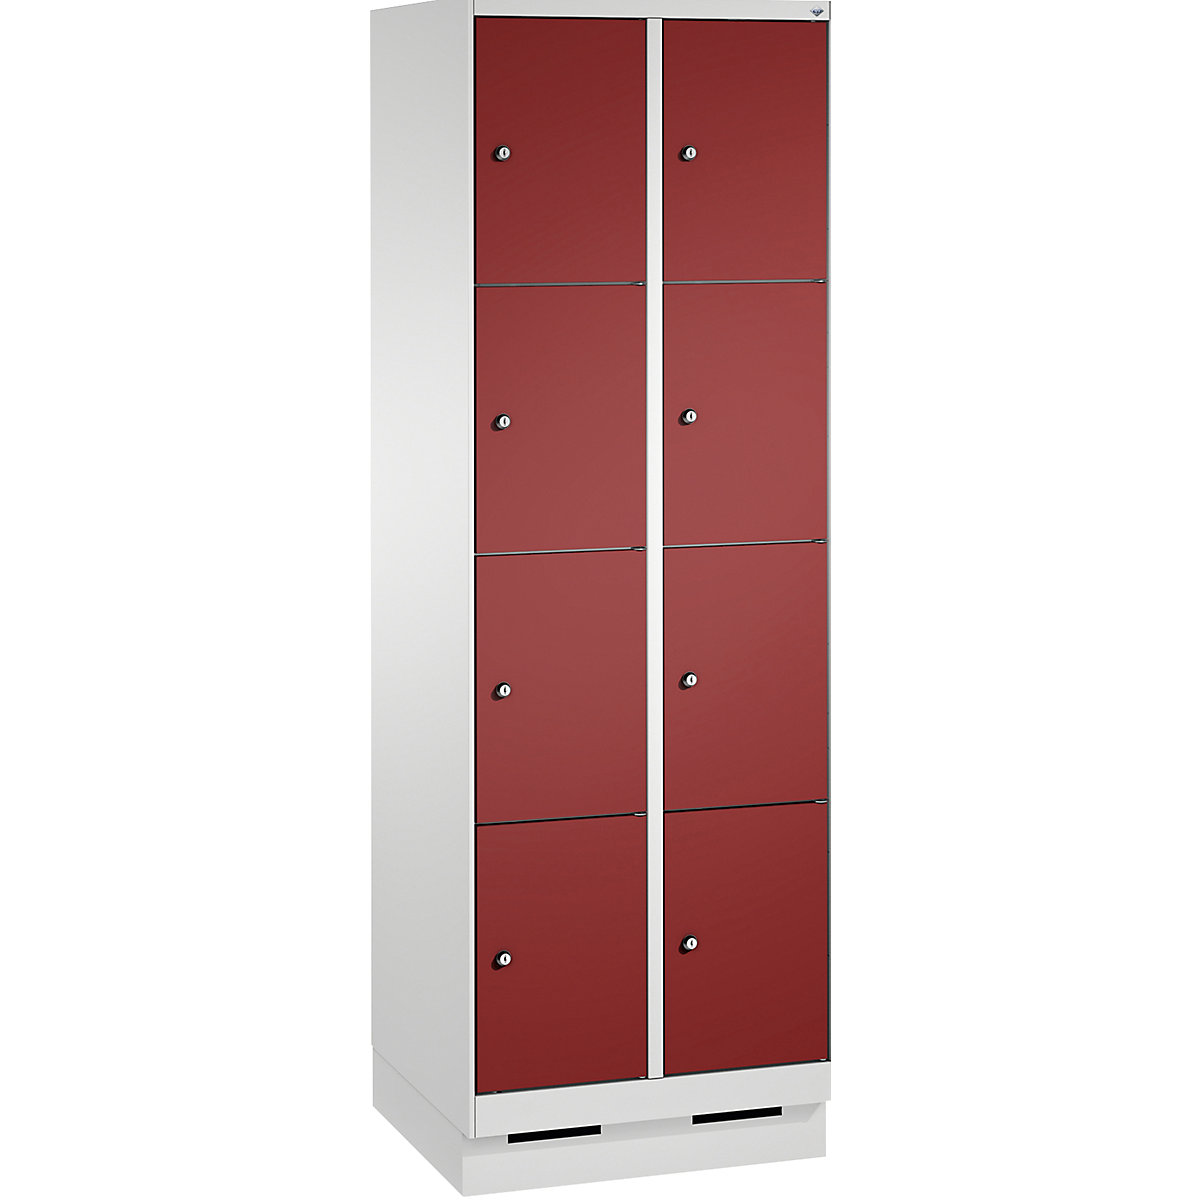 Armoire à casiers sur socle EVOLO – C+P, 2 compartiments, 4 casiers chacun, largeur compartiments 300 mm, gris clair / rouge rubis-4